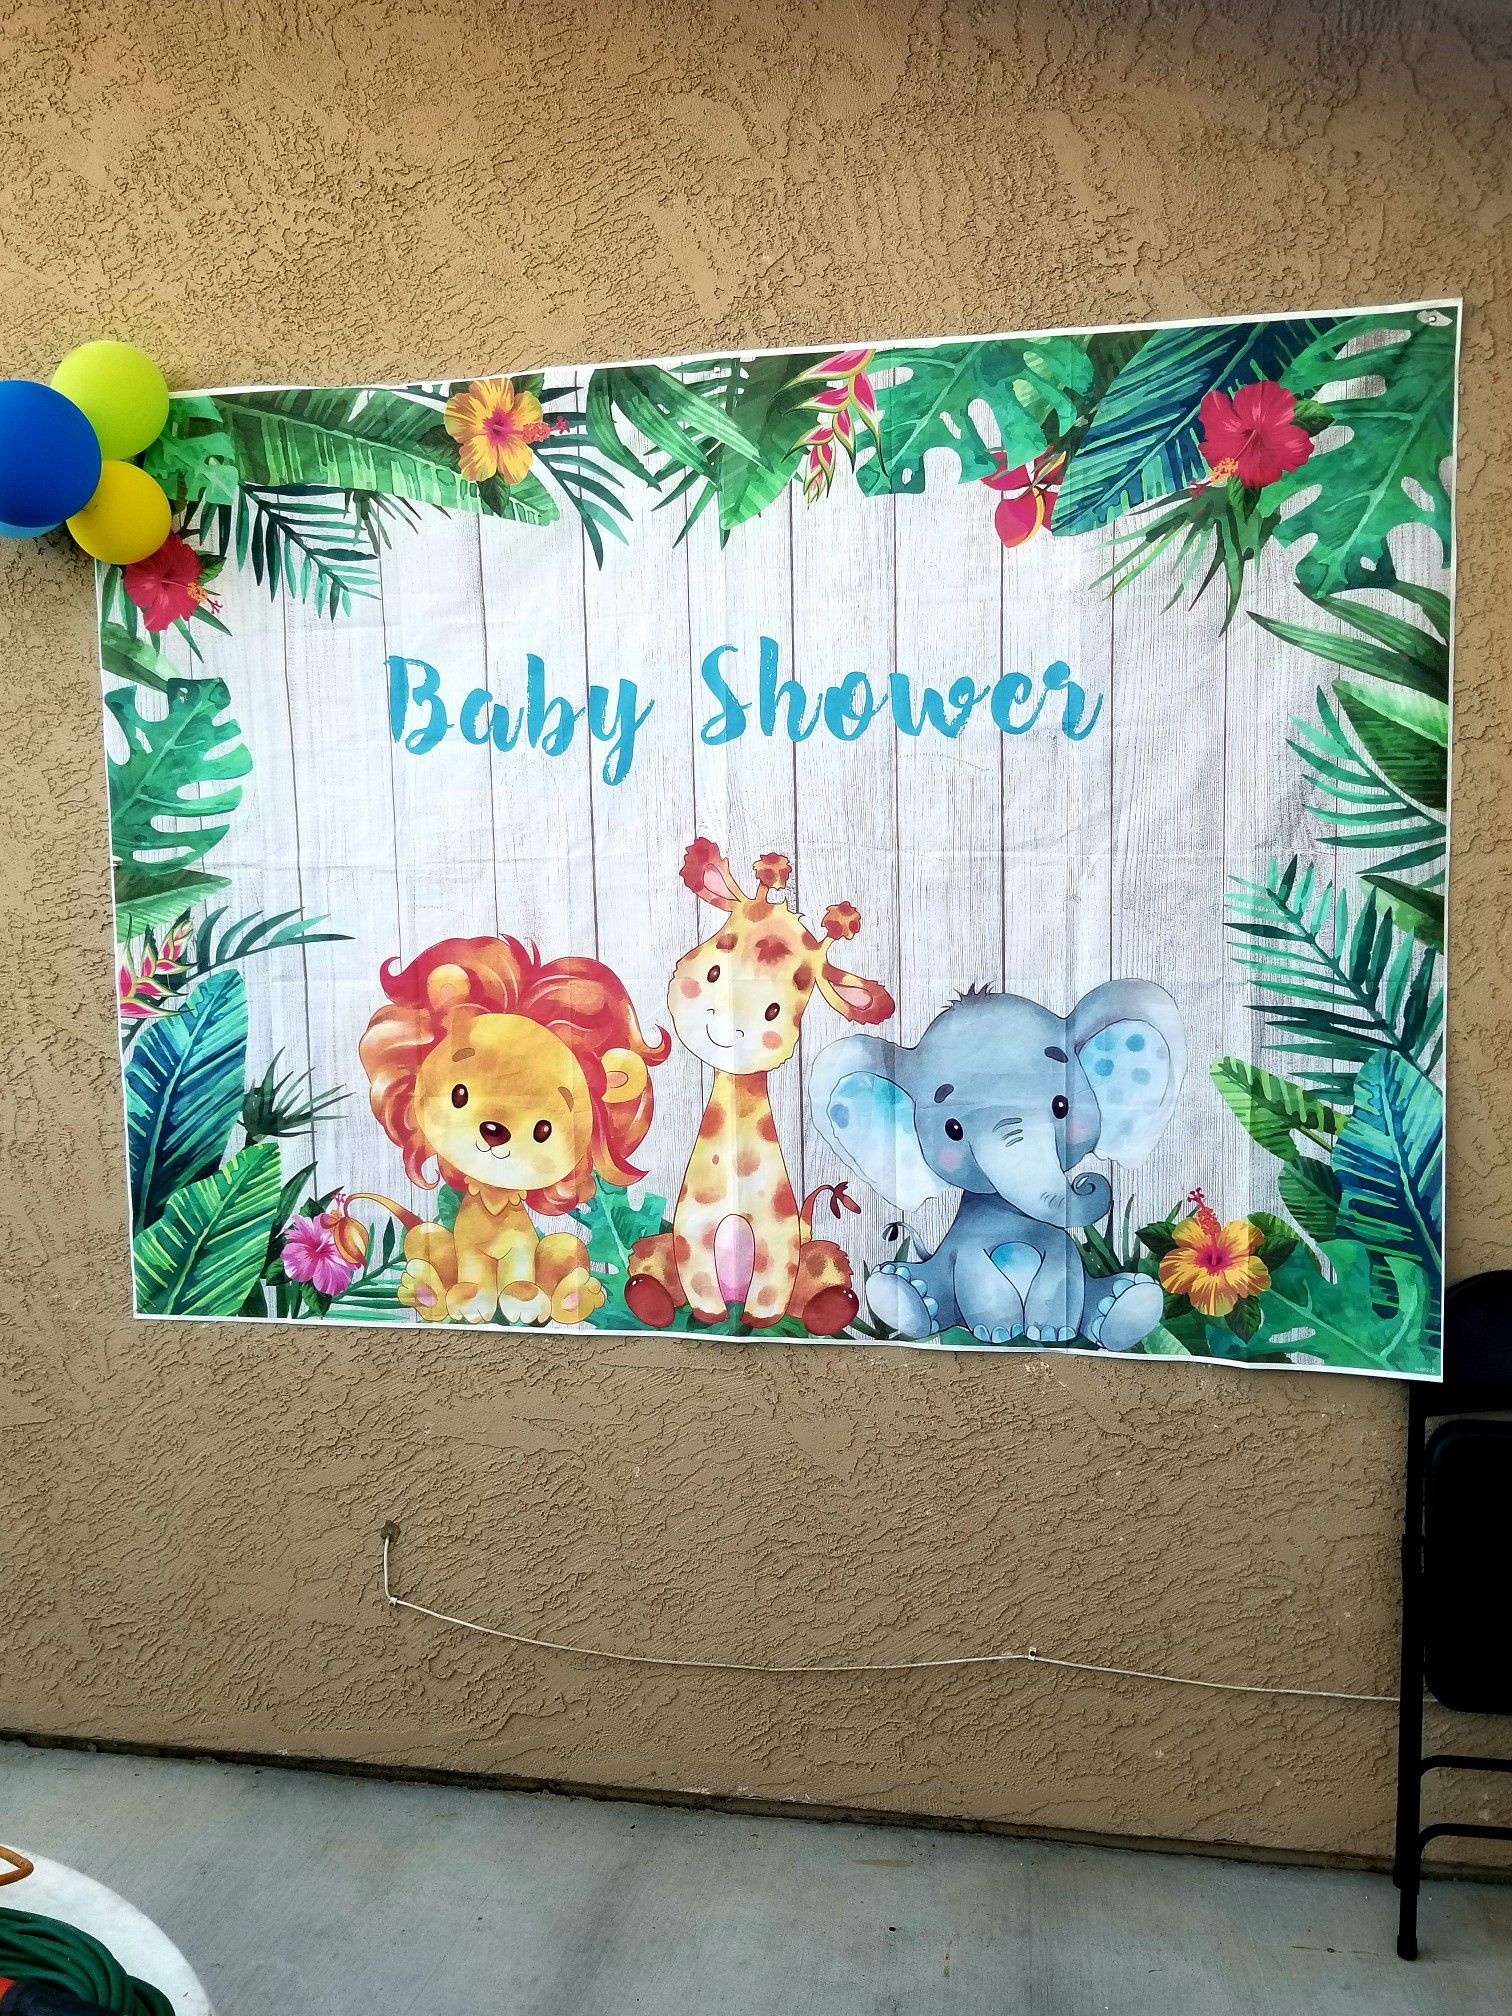 Babyshower banner